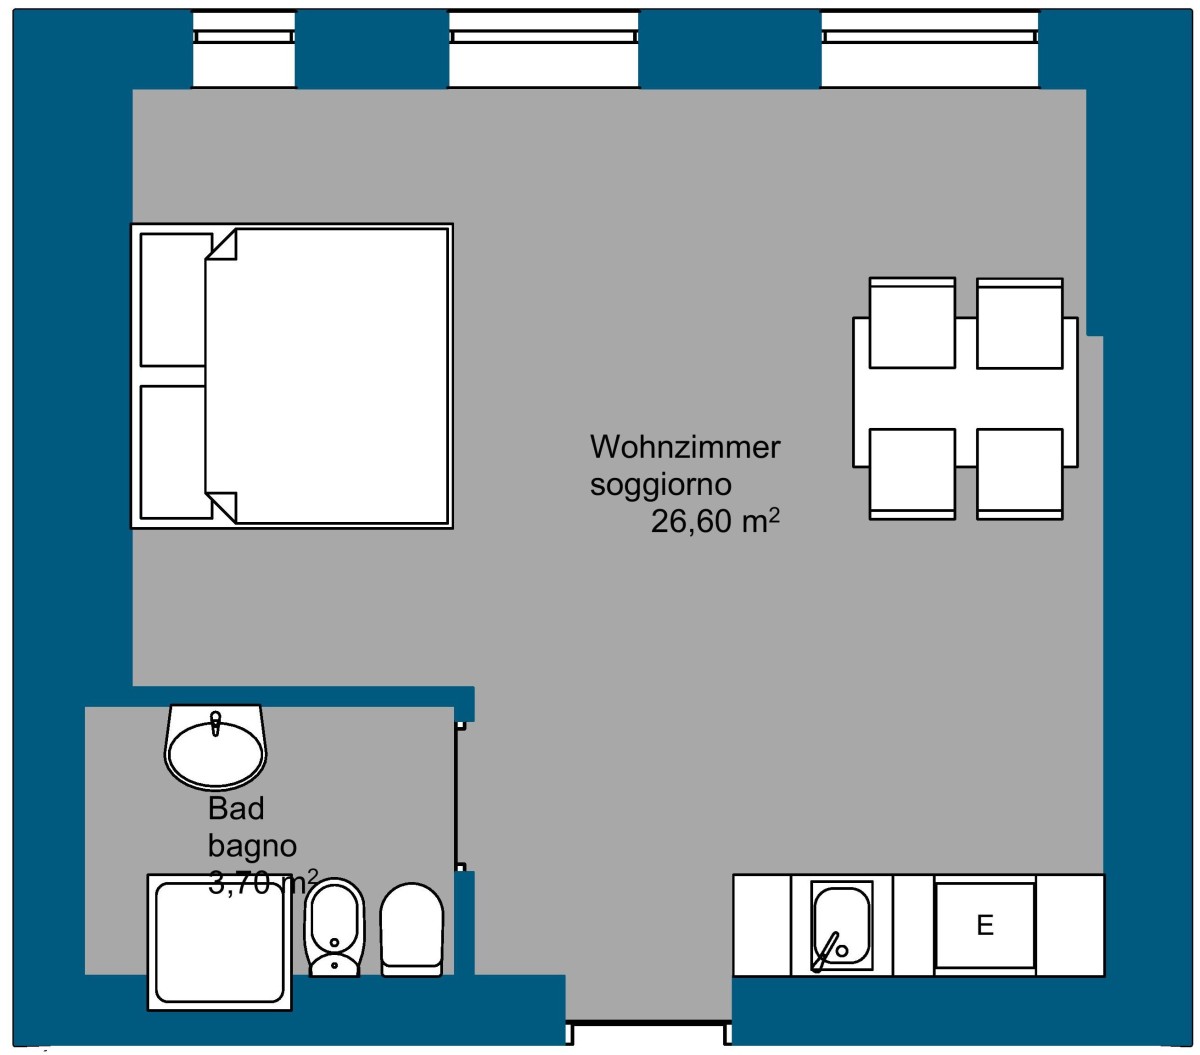 Brenner - Möblierte und gepflegte 1-Zimmer Wohnung in Gossensass!